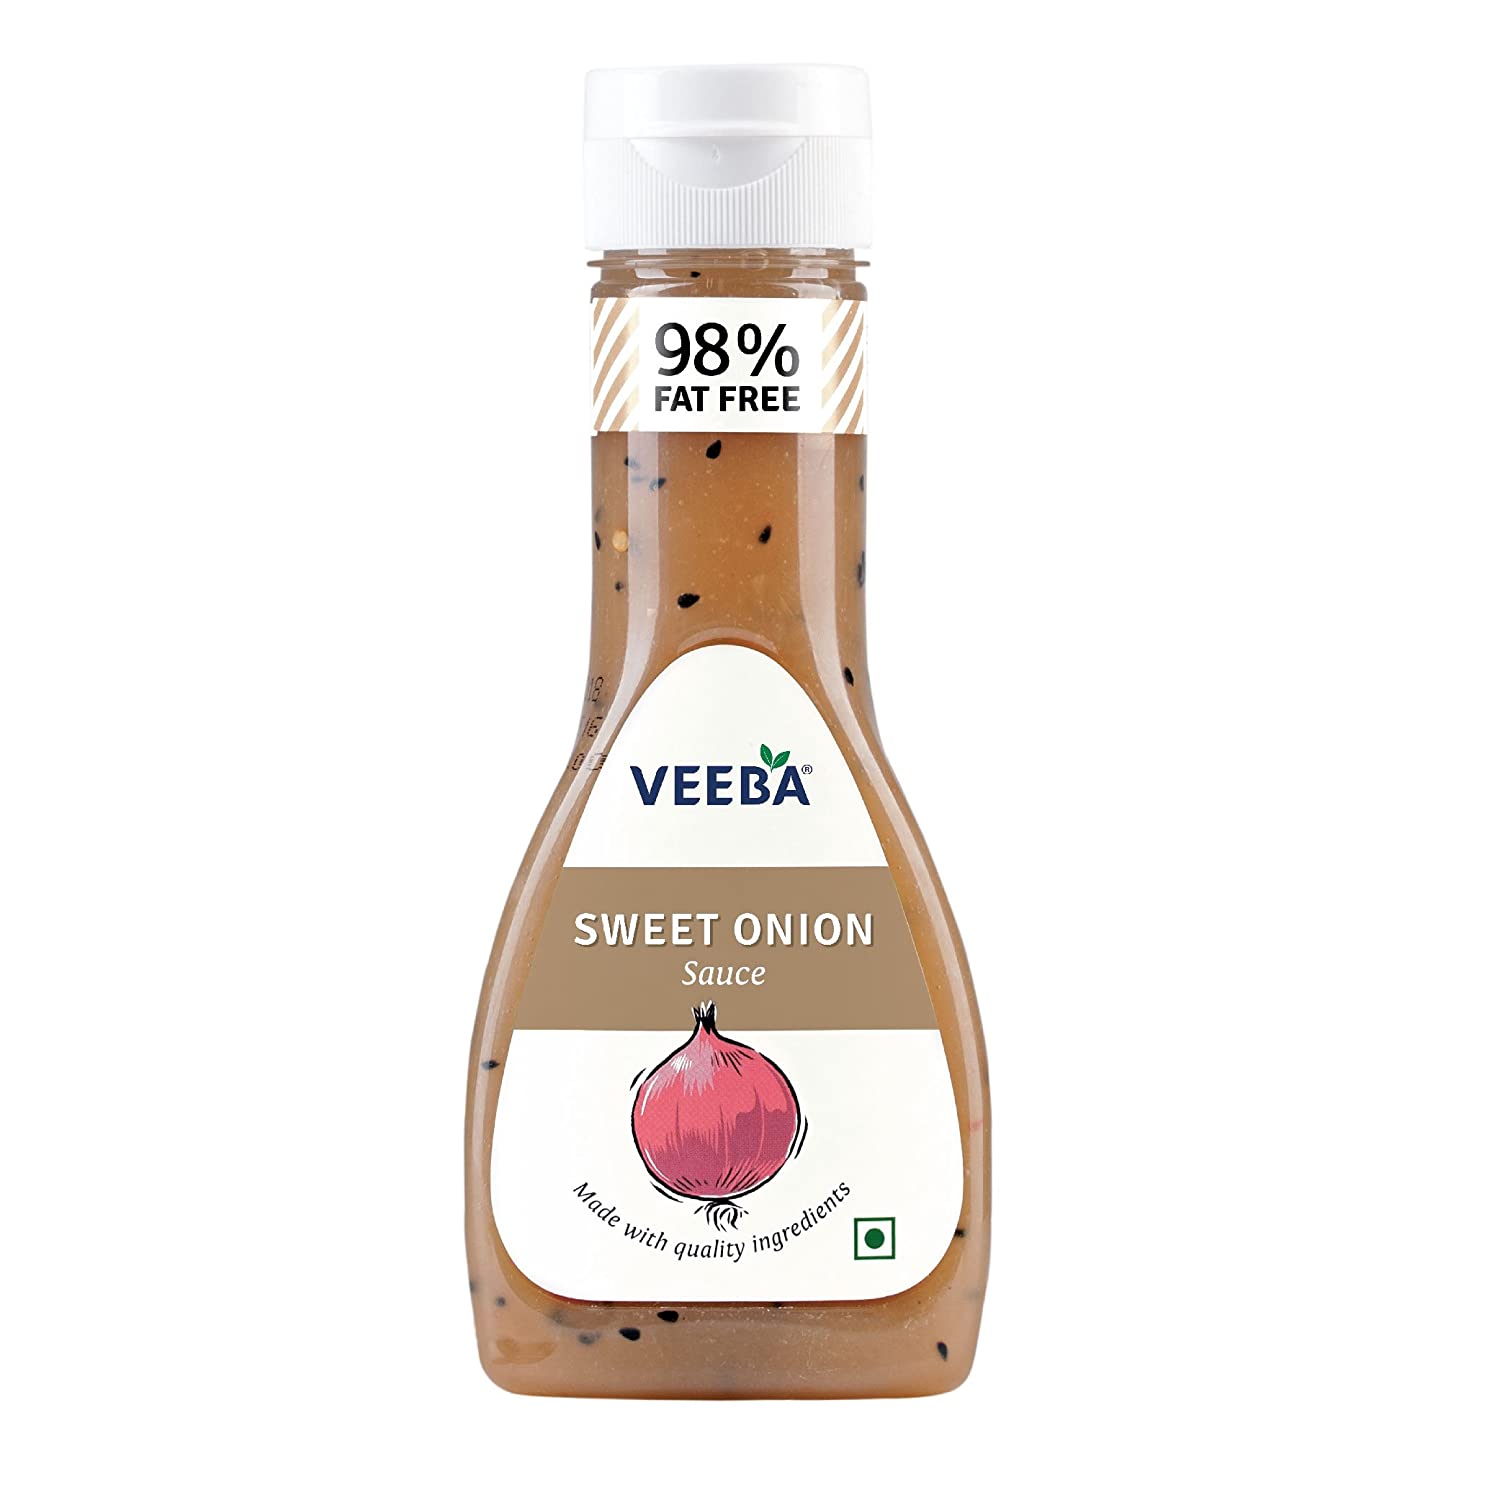 Veeba Sweet Onion Sauce Image